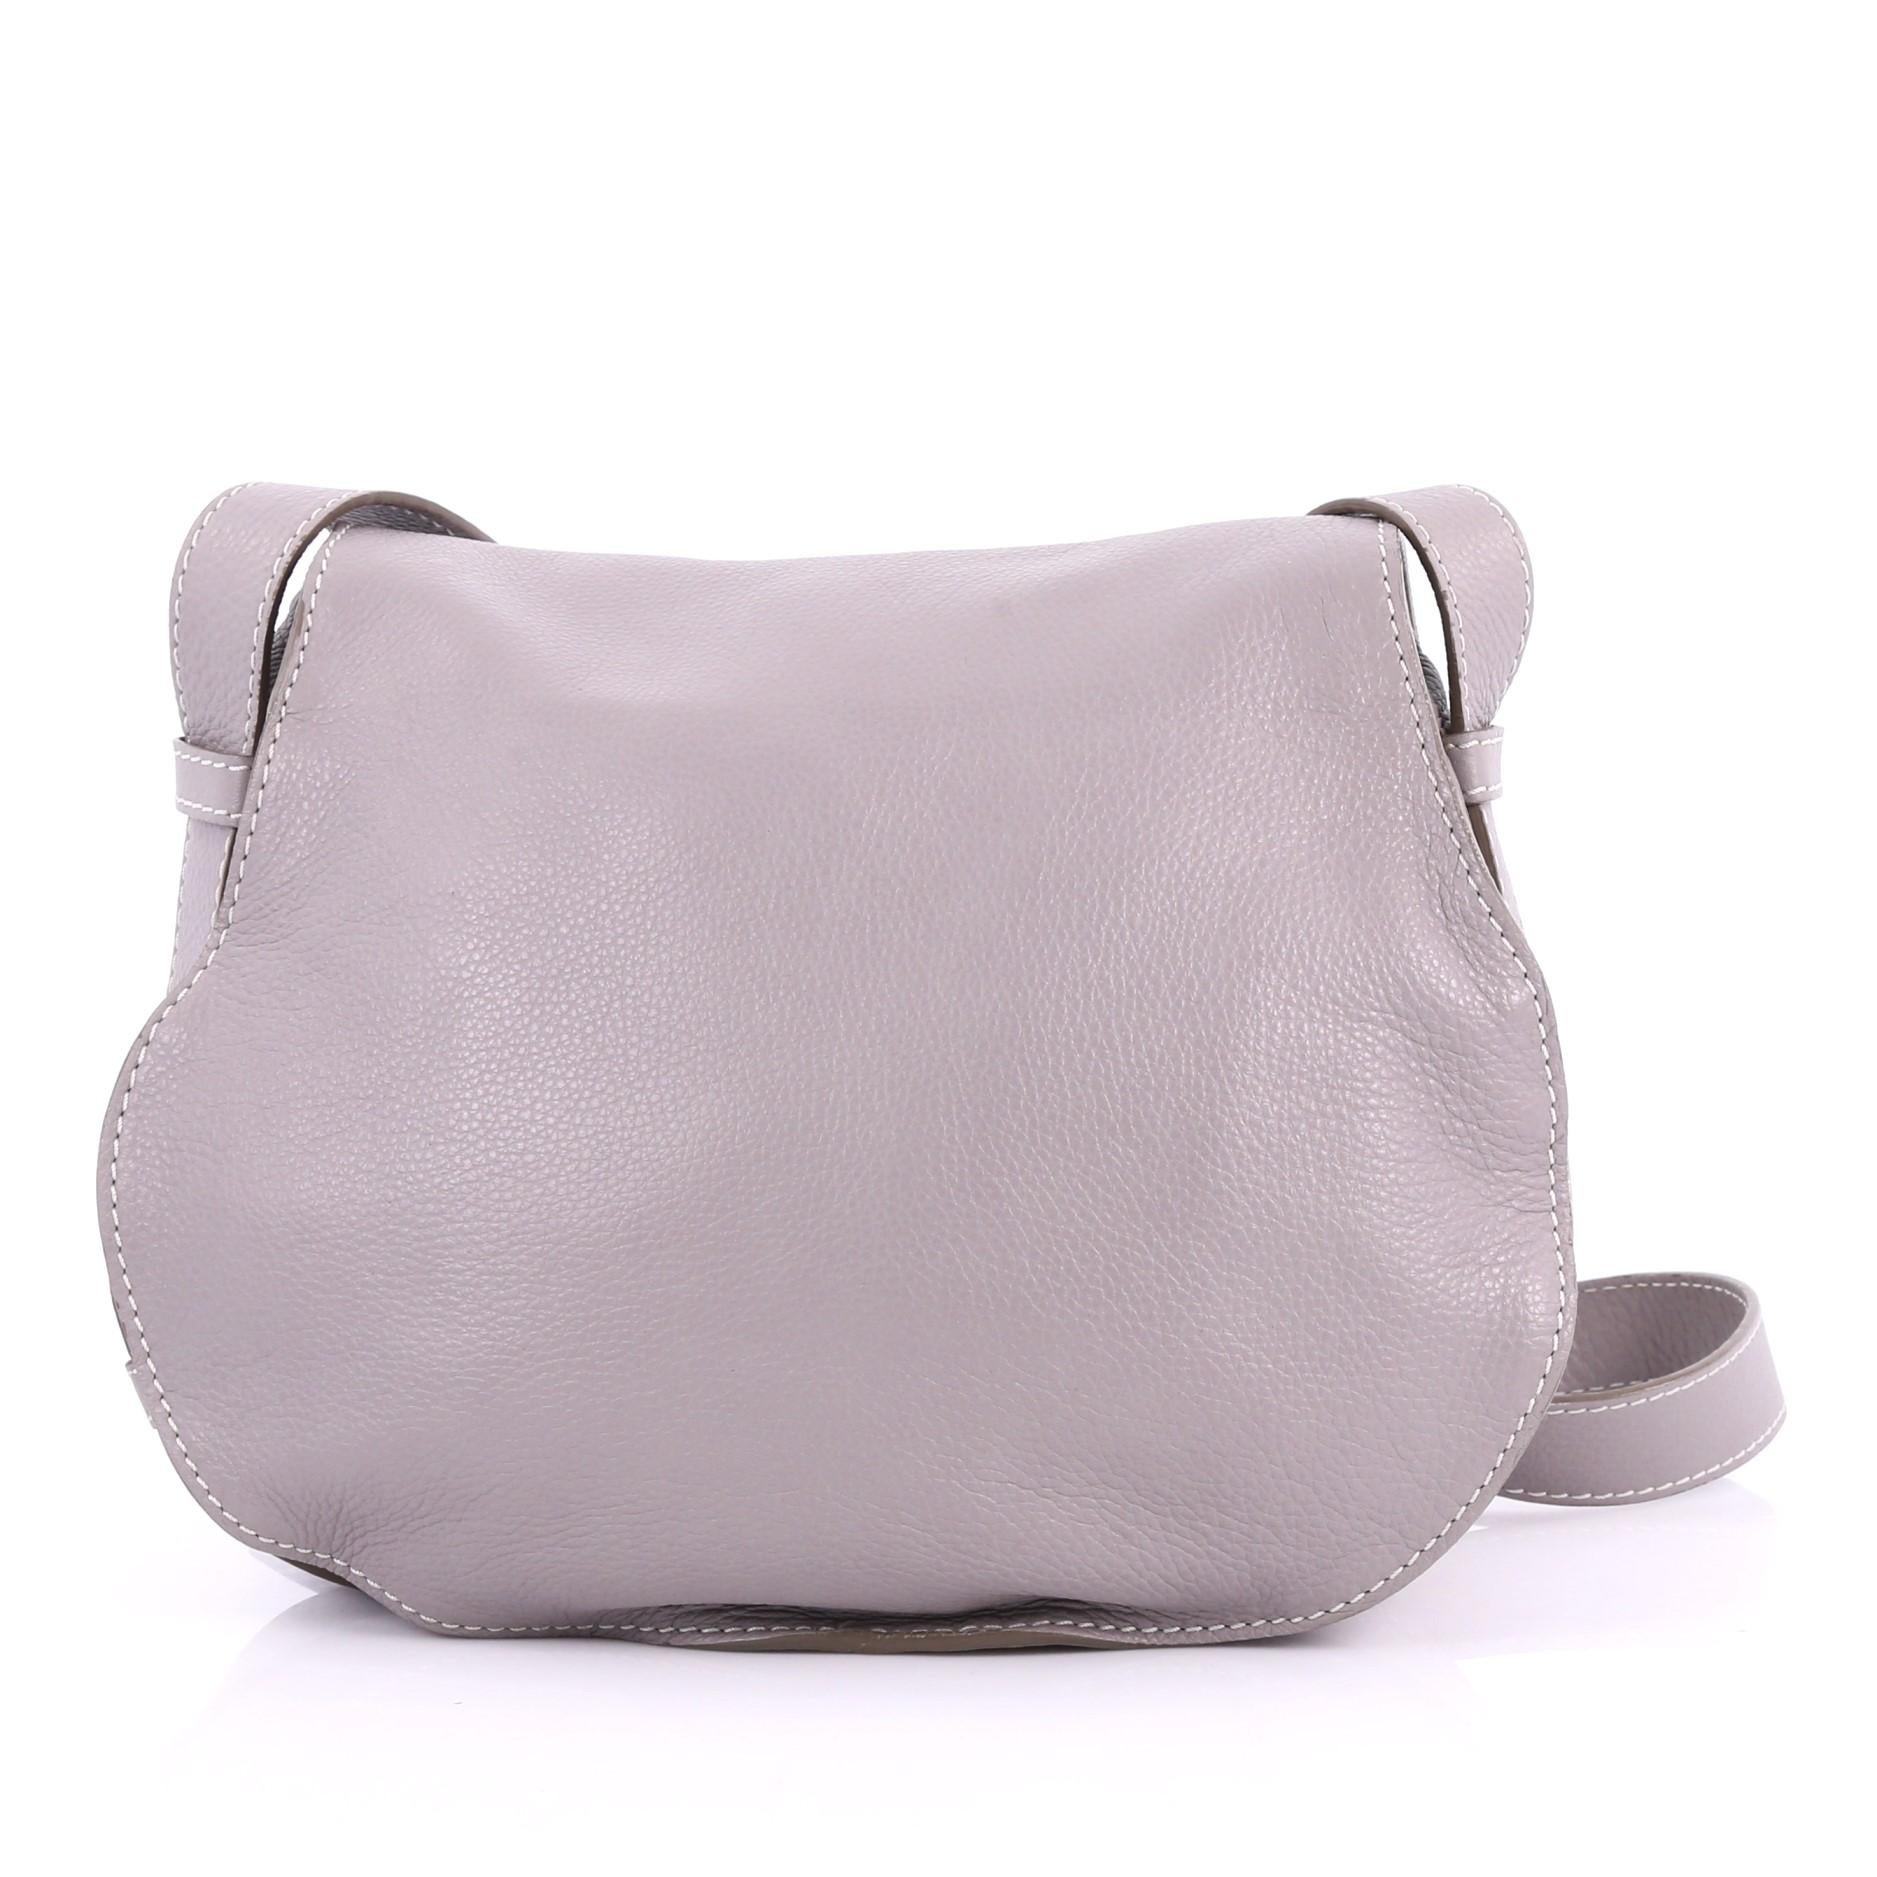 Gray Chloe Marcie Crossbody Bag Leather Medium